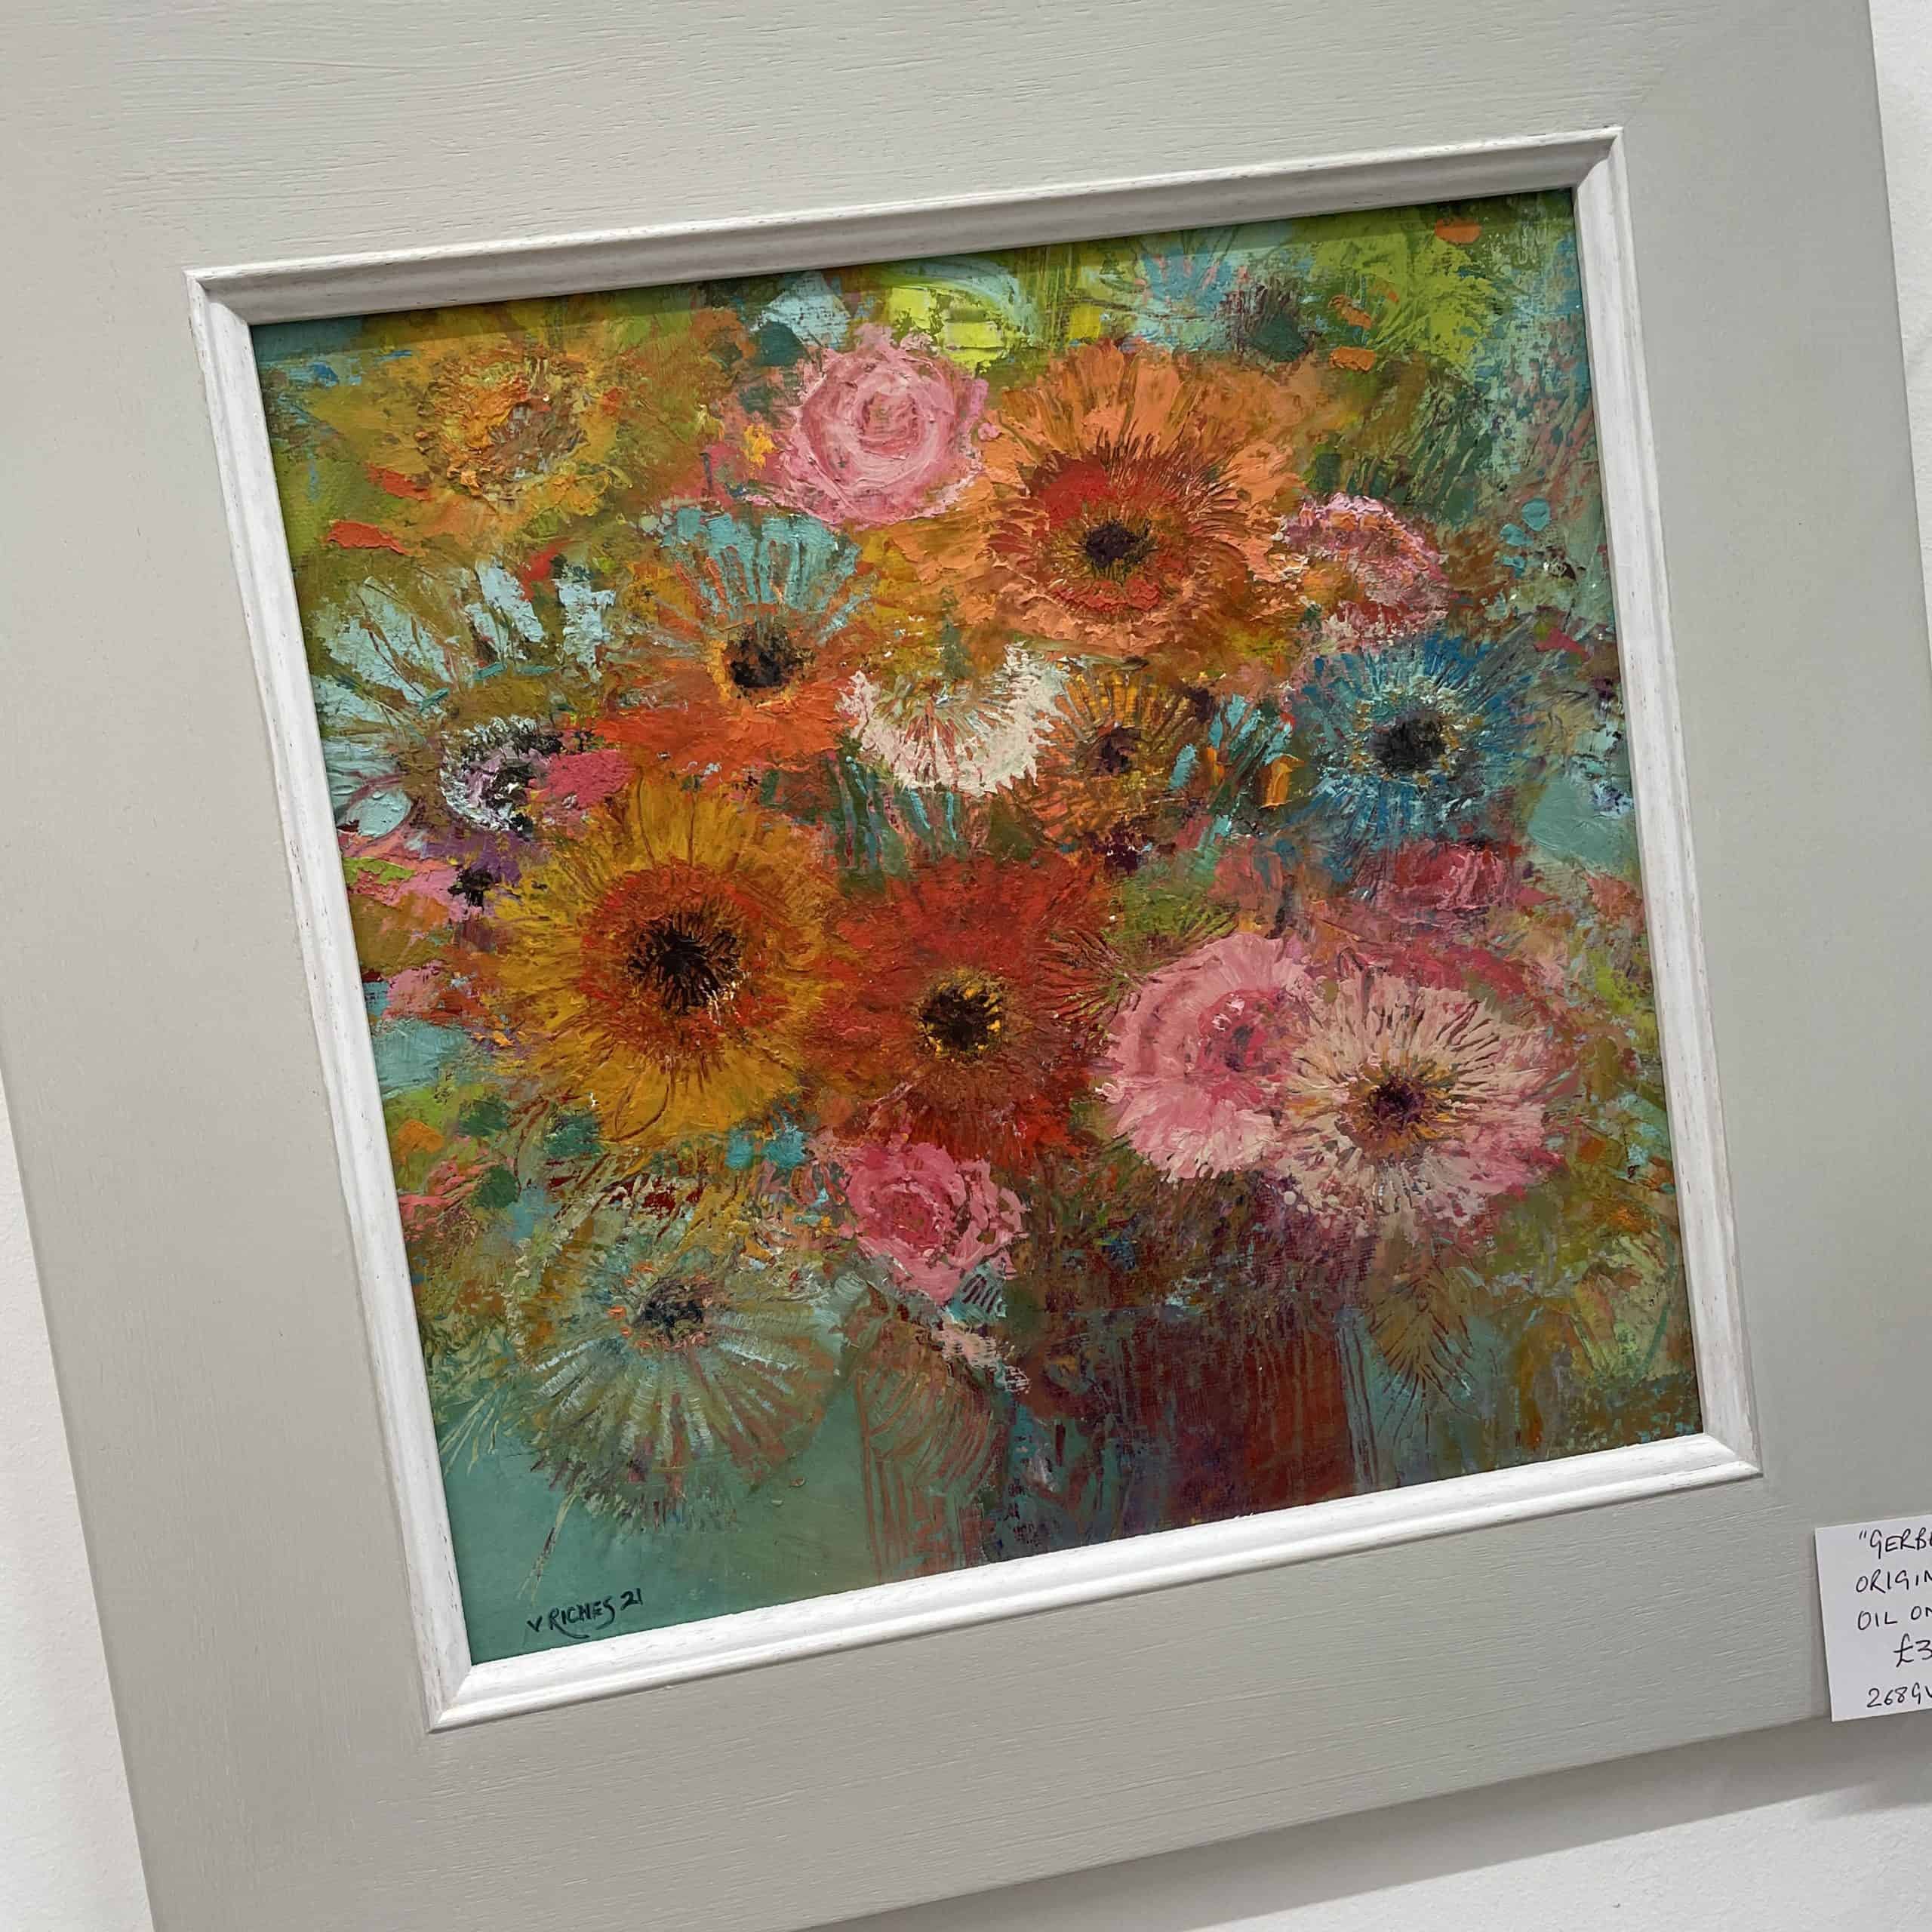 Exhibition: Vivian Riches' Florals